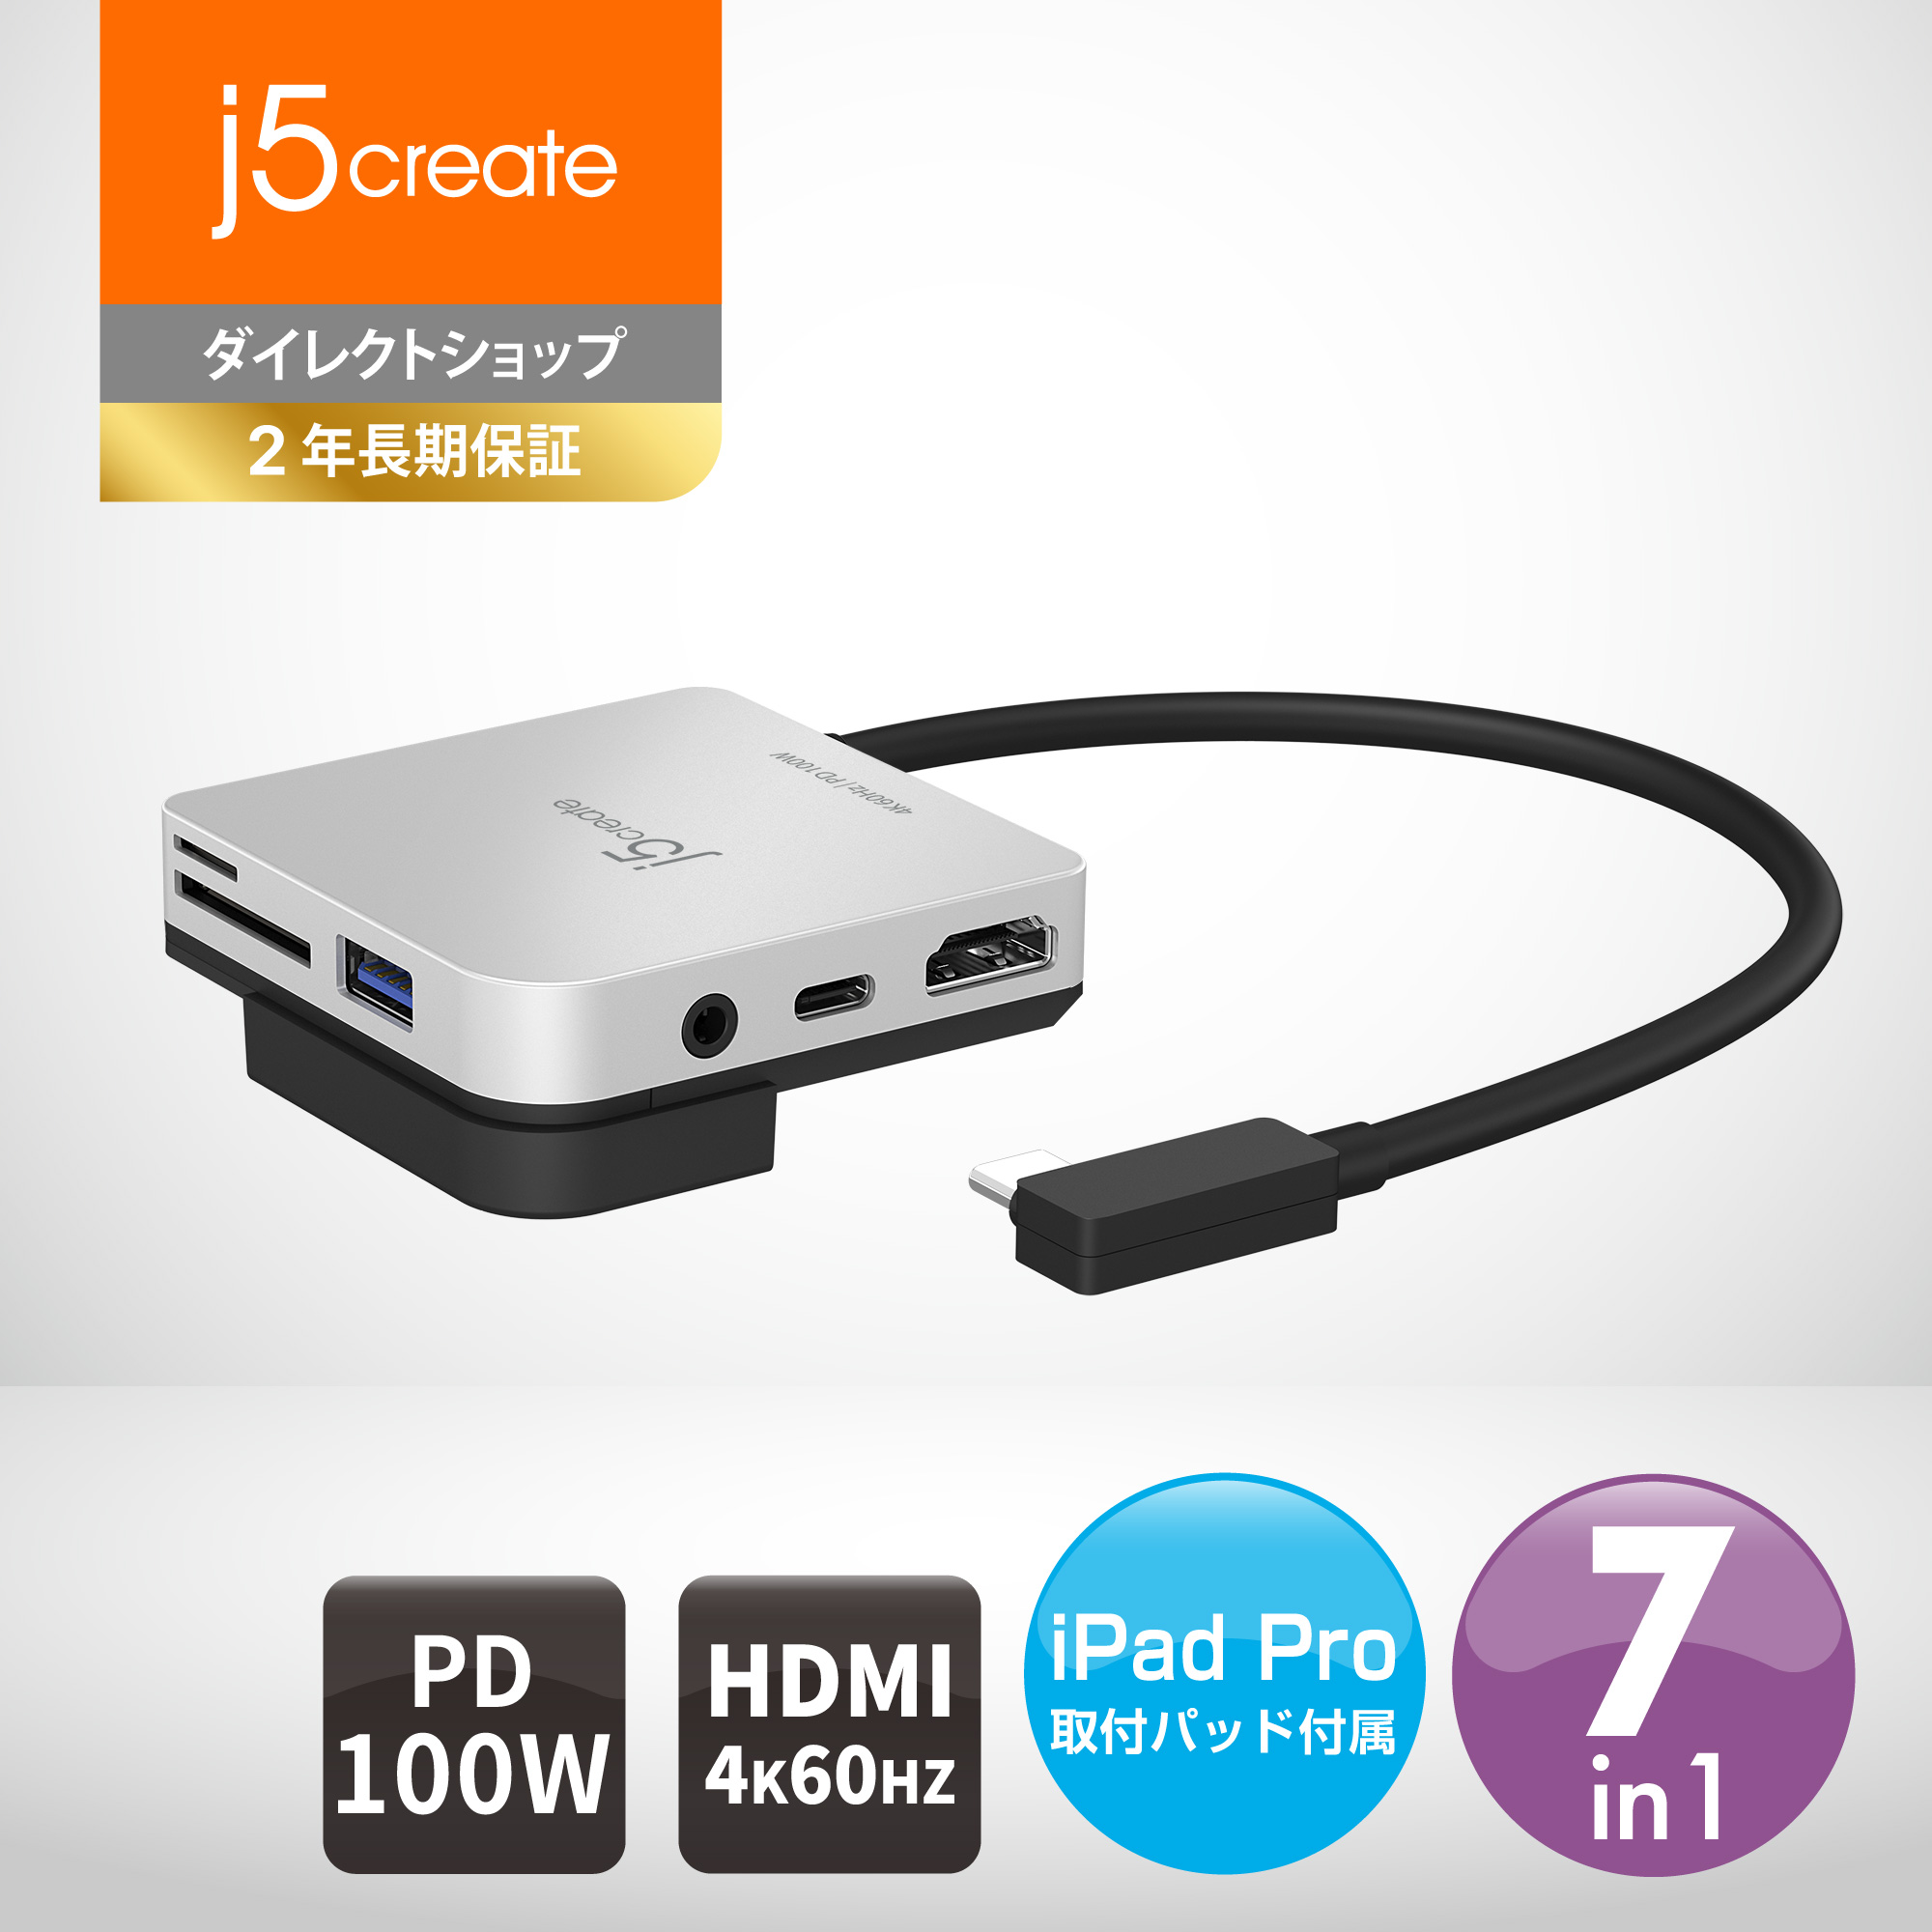 【楽天市場】j5 create USB 3.0 5in1 デュアルモニタ ミニドック 